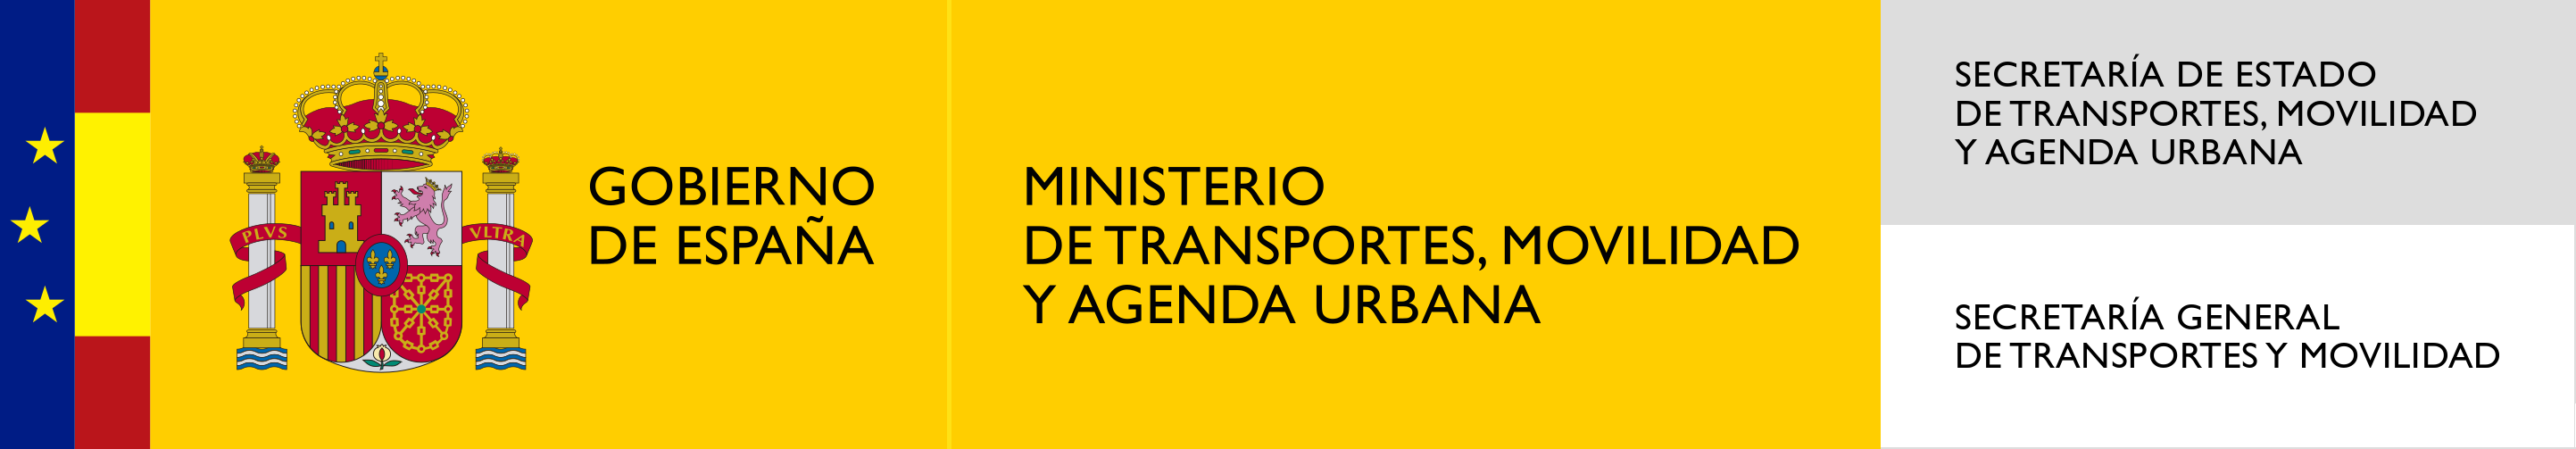  MITMA-Ministerio de Transportes, Movilidad y Agenda Urbana